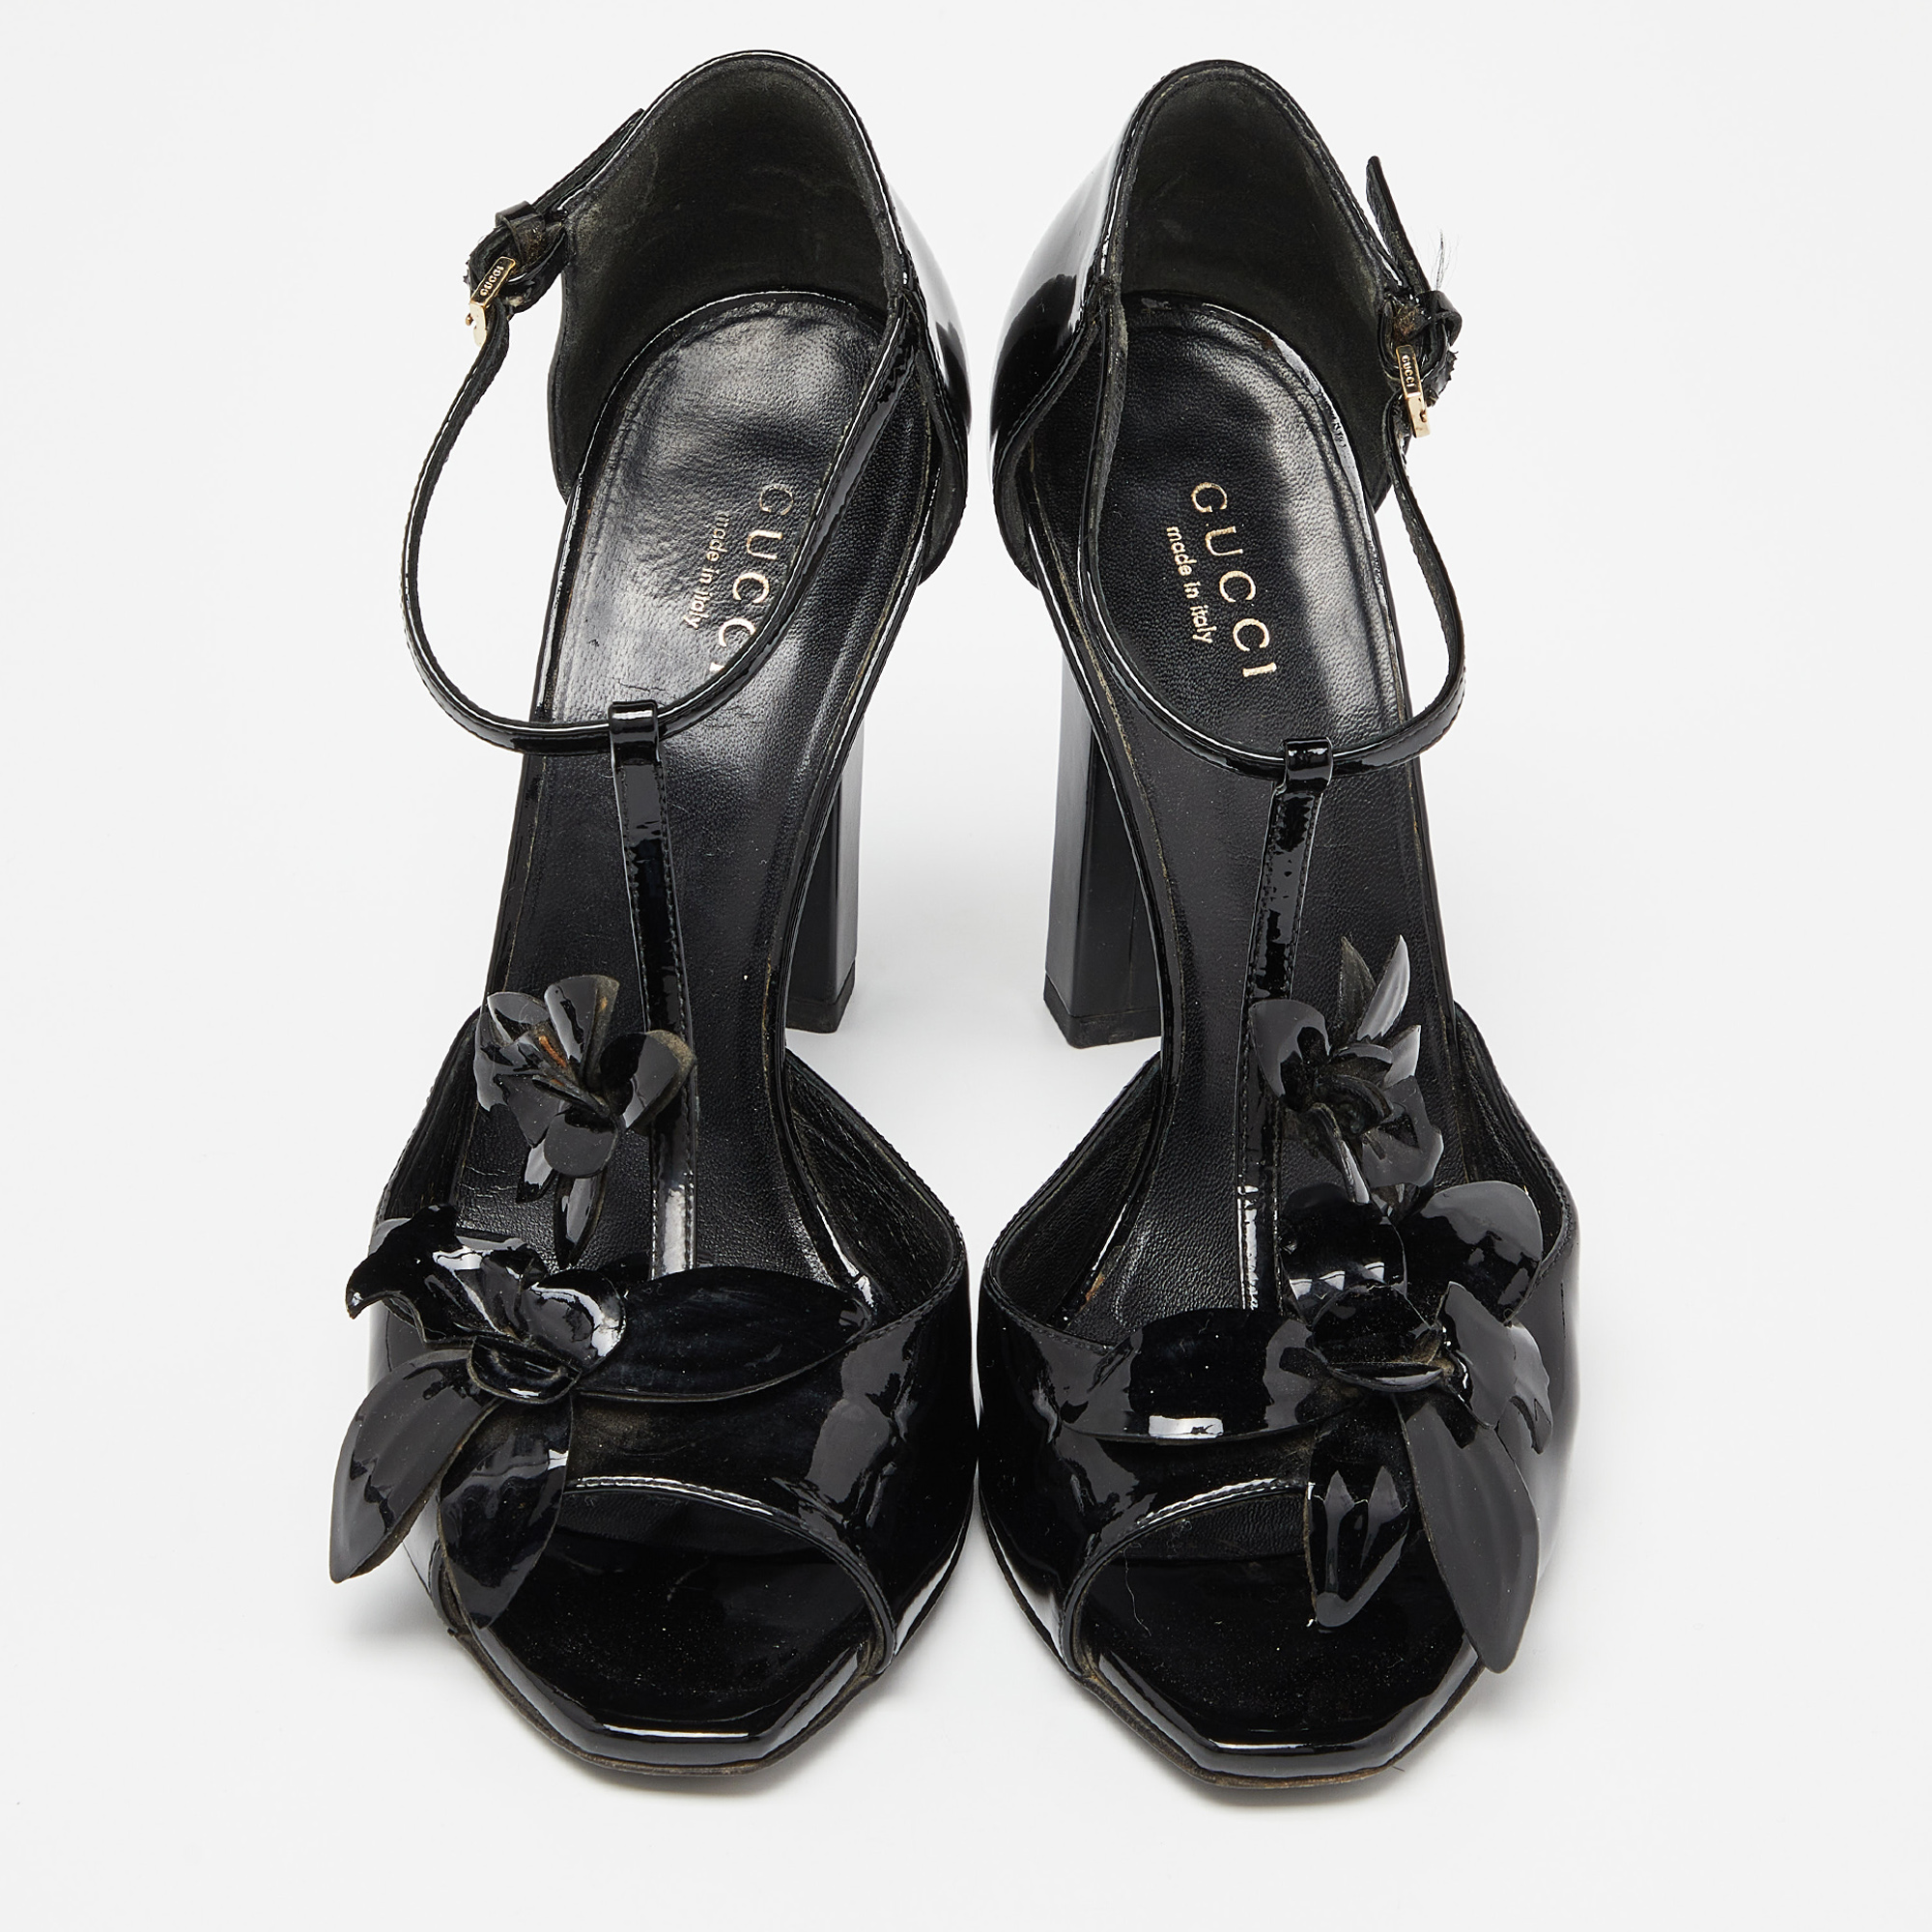 Gucci Black Patent Leather Applique T Strap Sandals Size 36.5